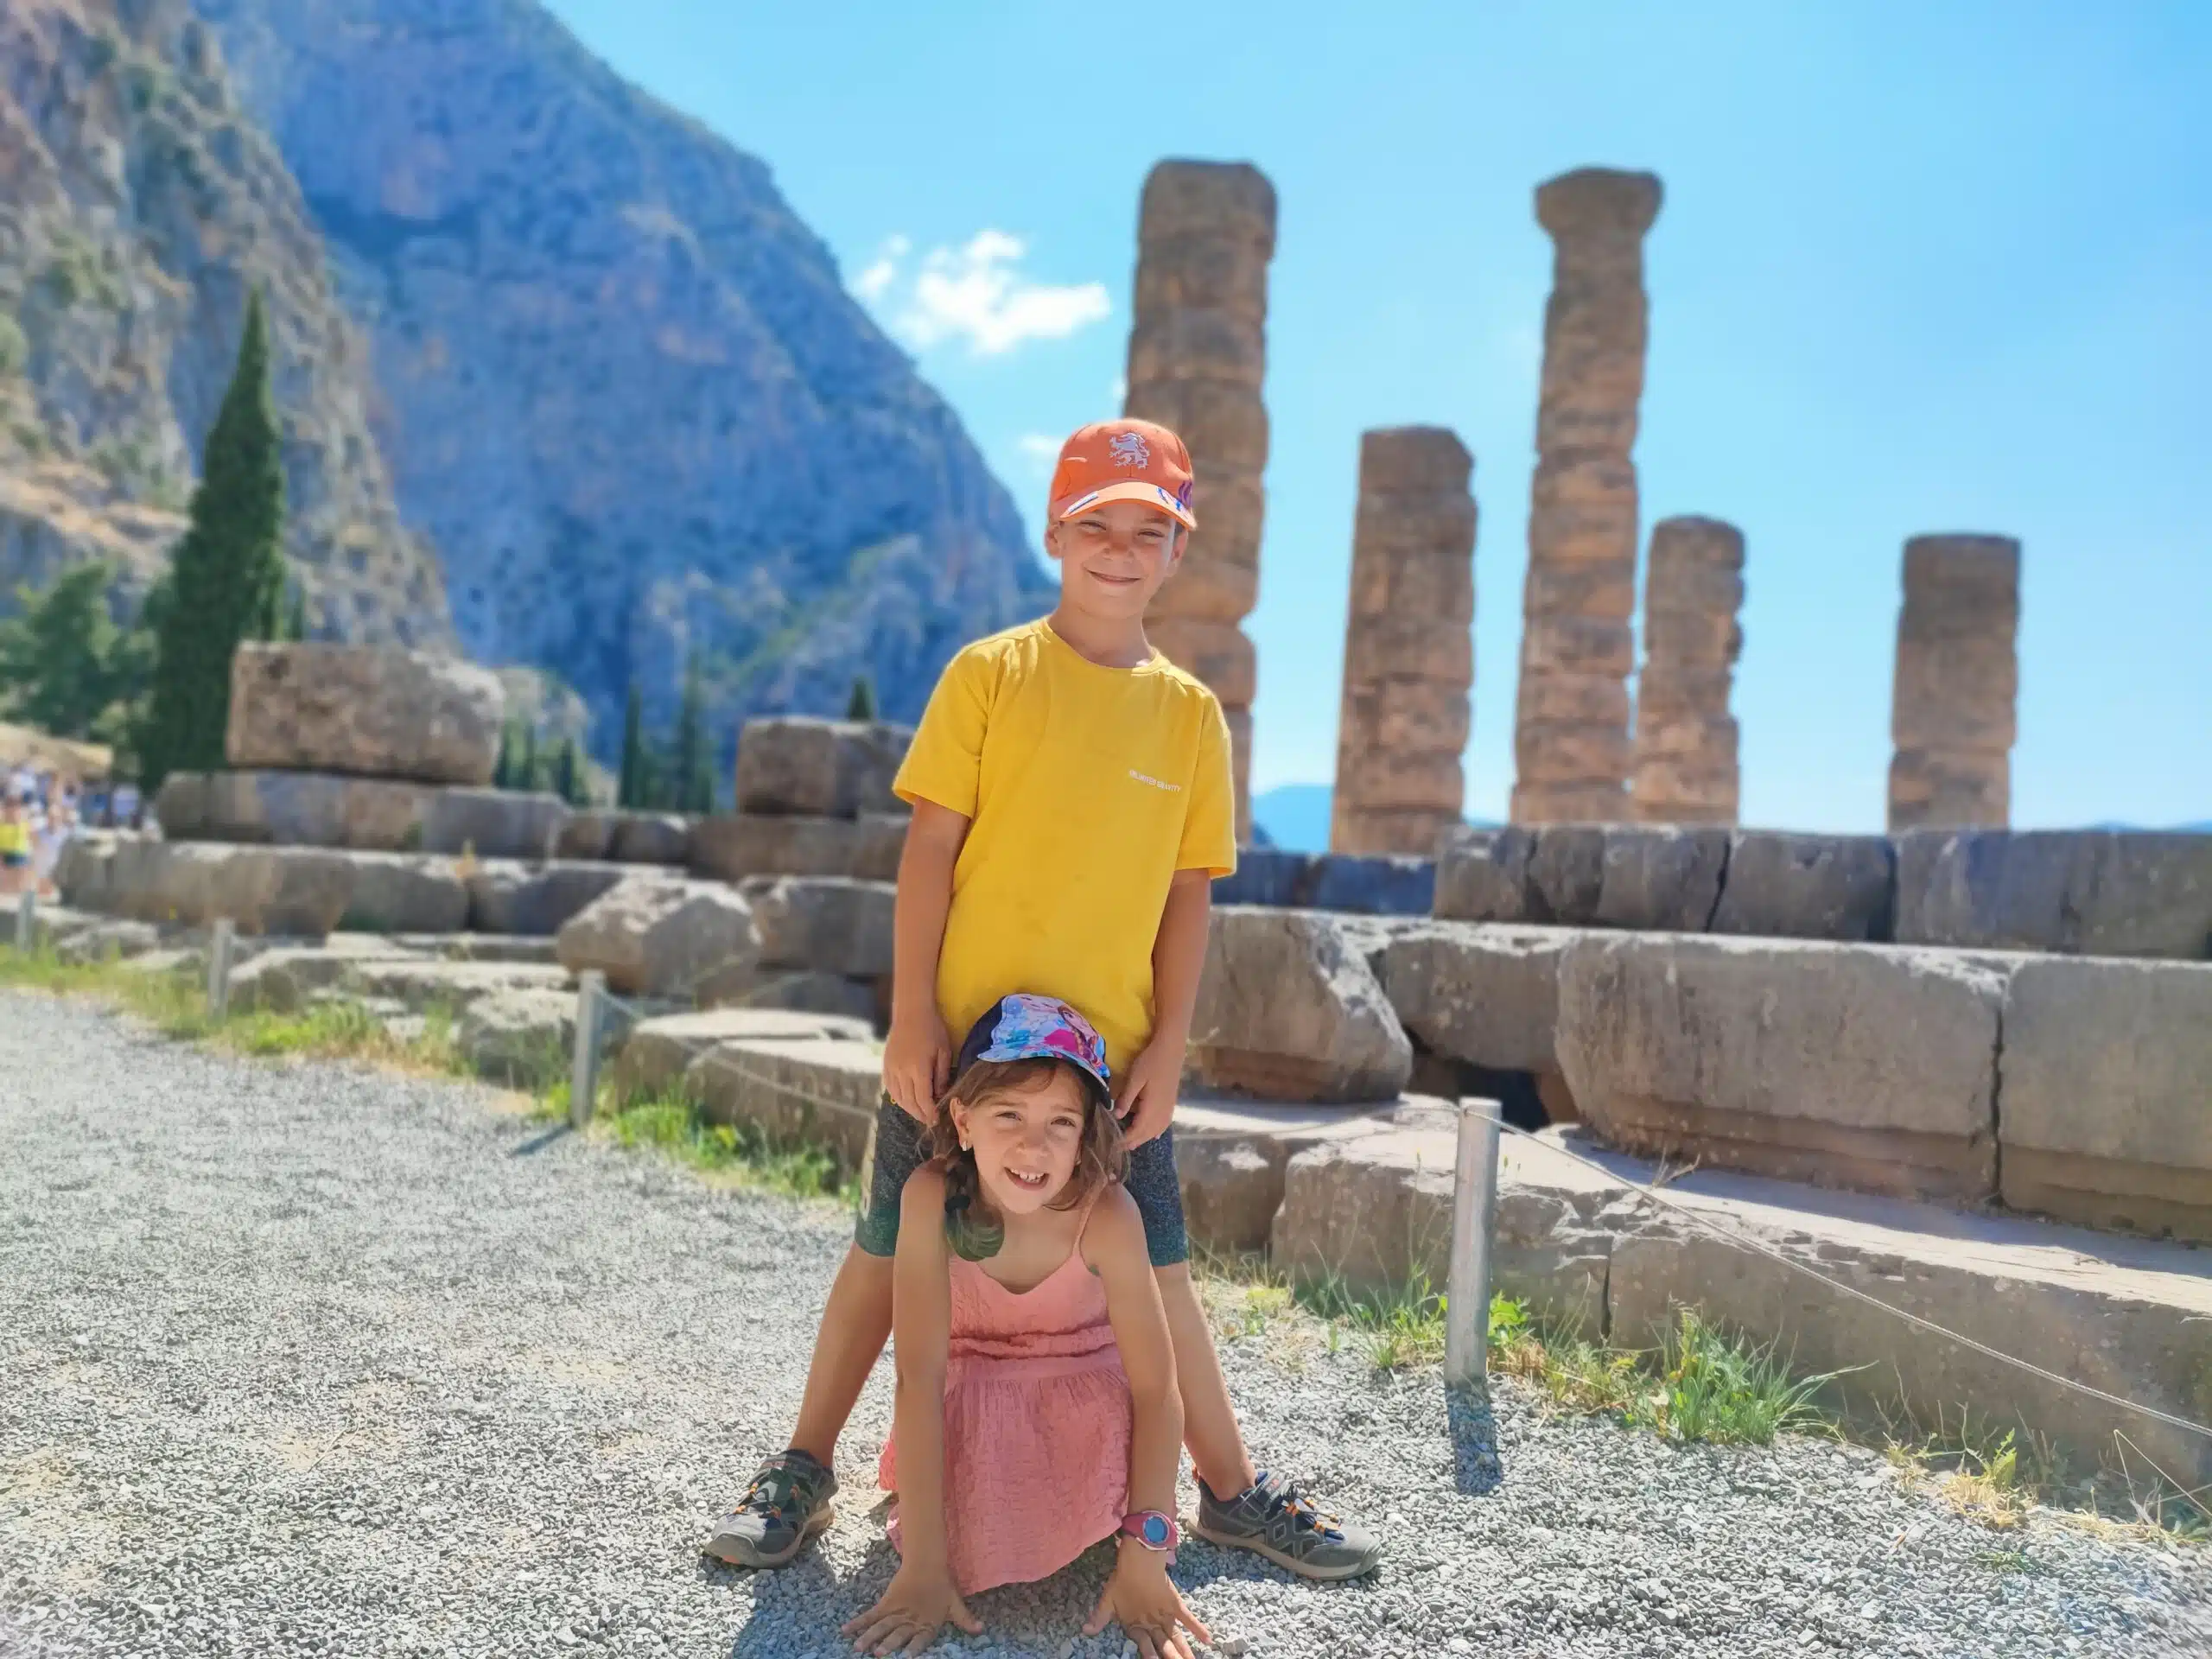 In questo momento stai vedendo Delfi in Grecia, una parte essenziale del tuo viaggio